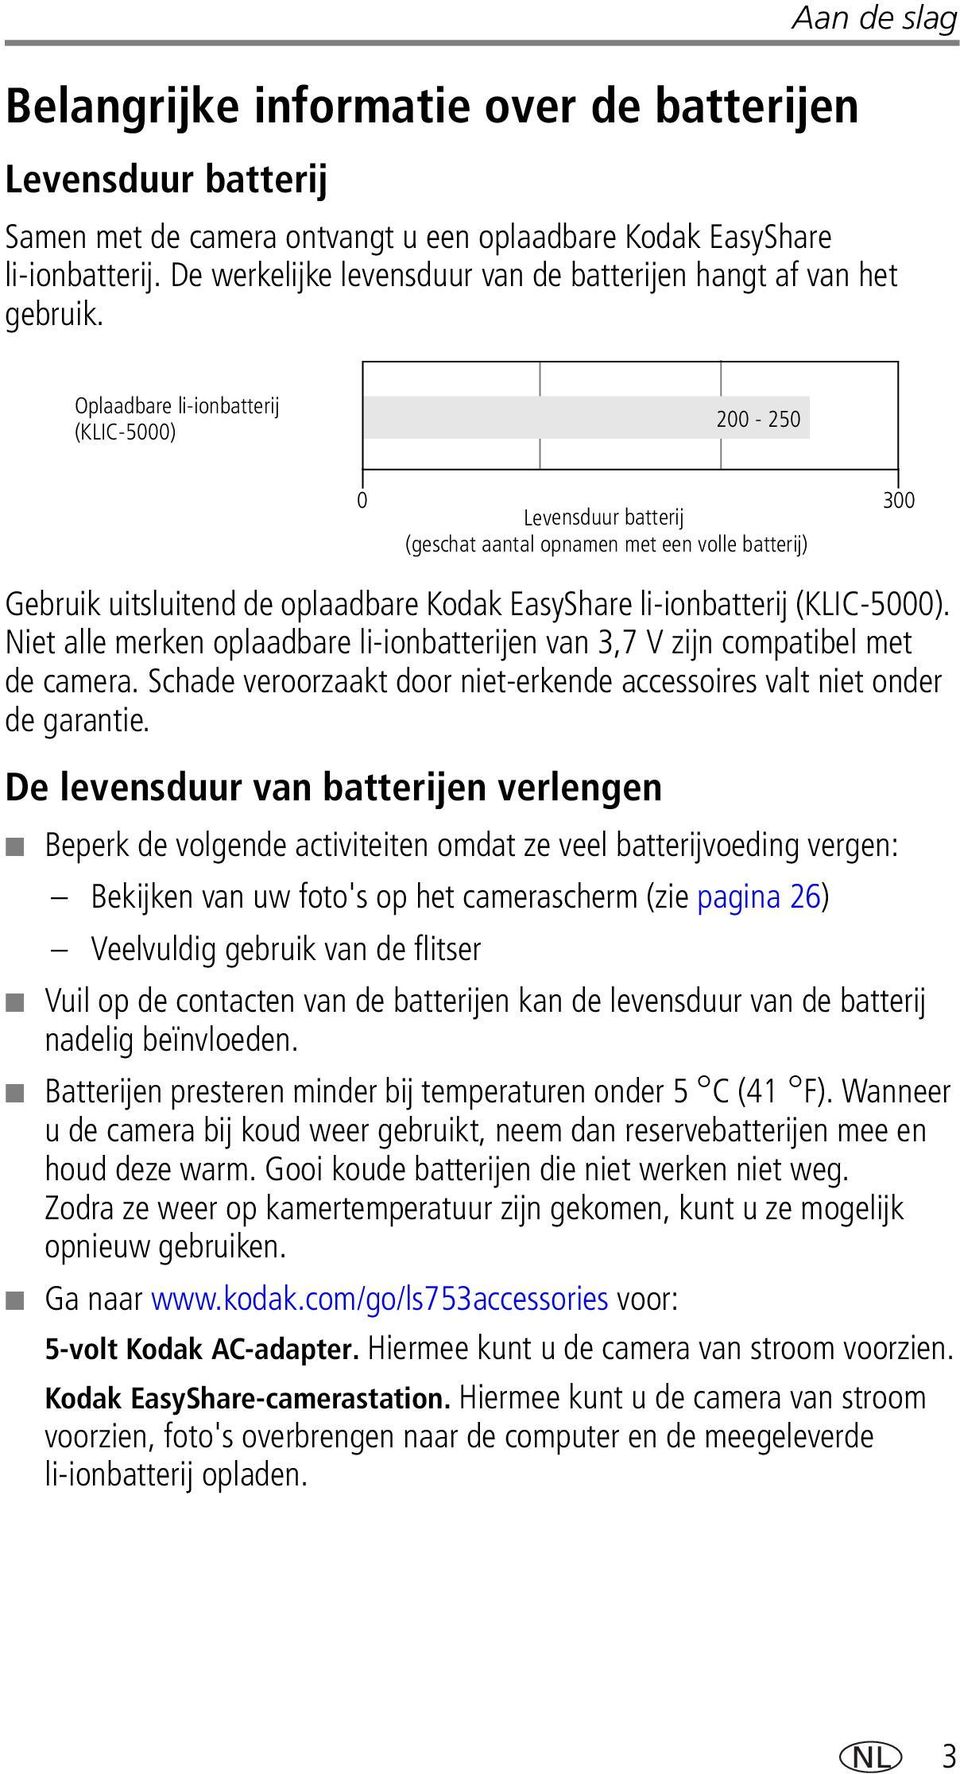 Oplaadbare li-ionbatterij (KLIC-5000) 200-250 0 Levensduur batterij 300 (geschat aantal opnamen met een volle batterij) Gebruik uitsluitend de oplaadbare Kodak EasyShare li-ionbatterij (KLIC-5000).